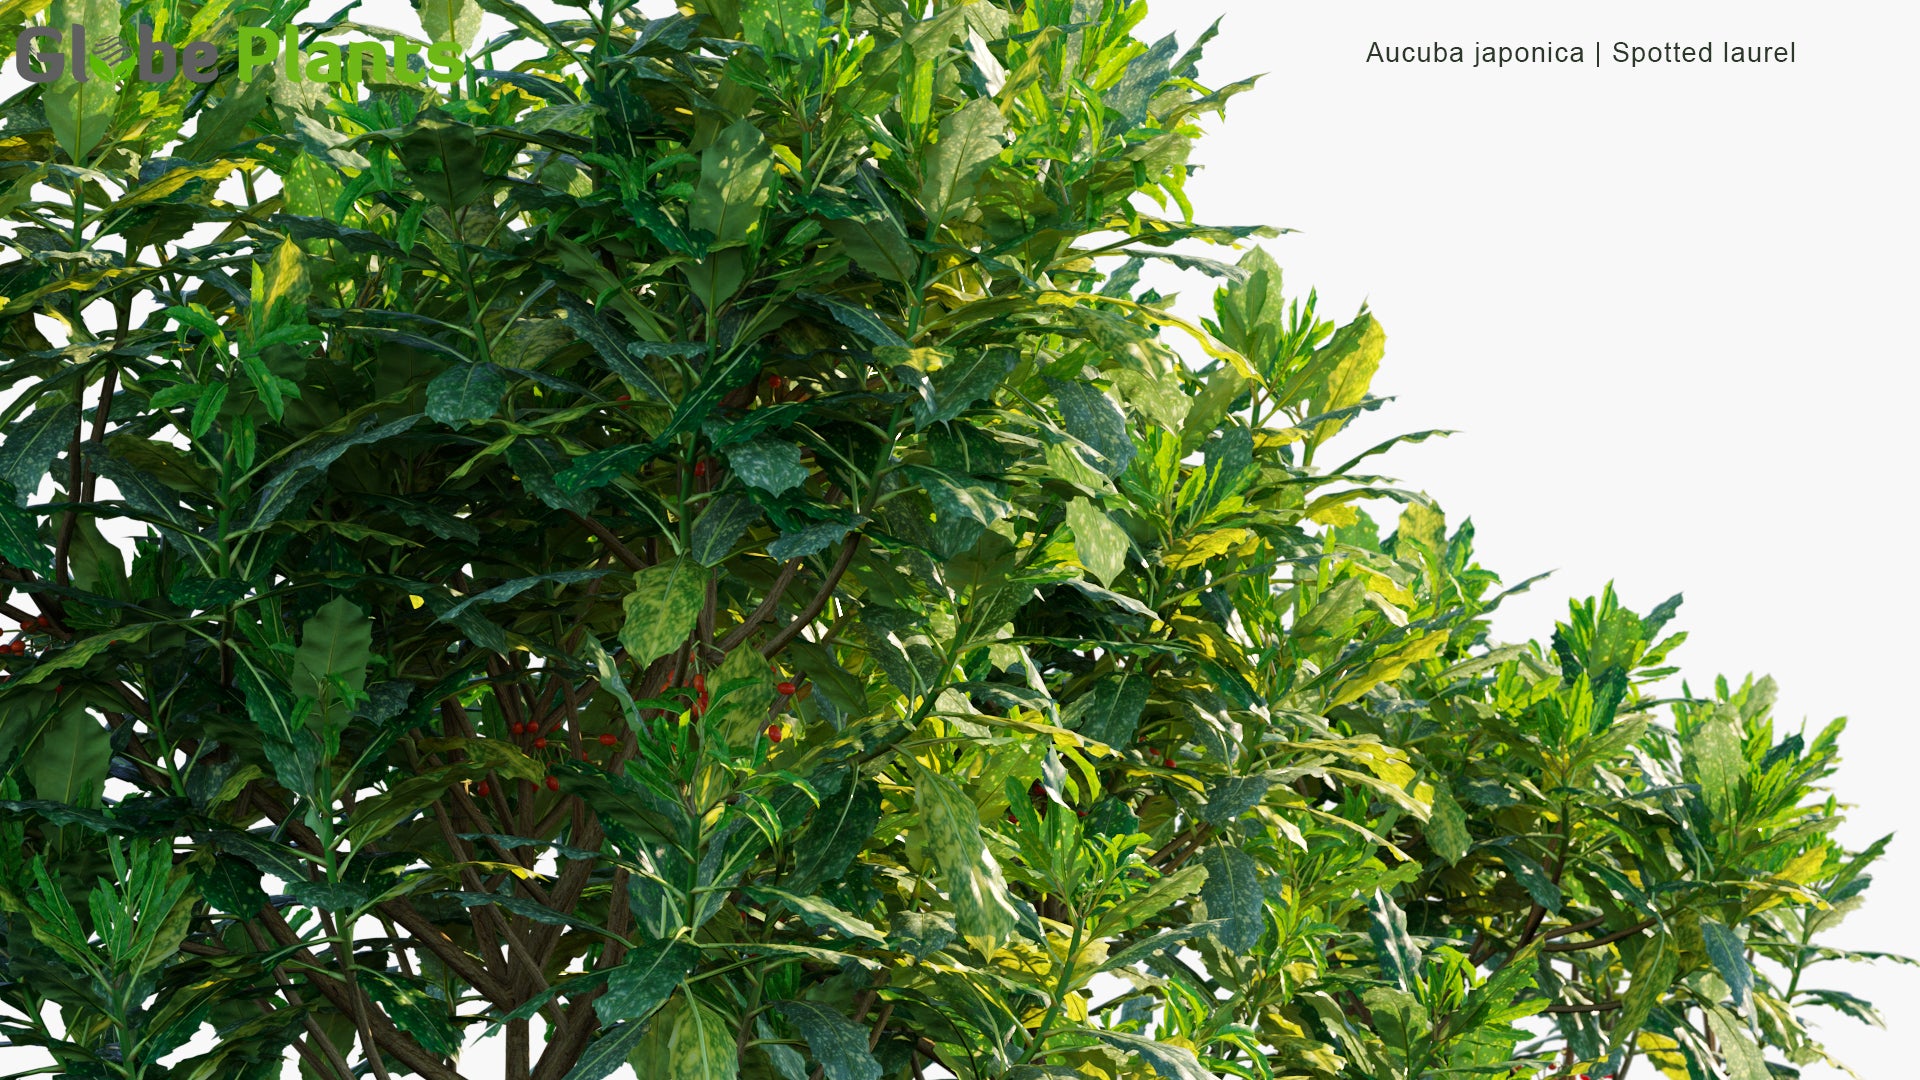 Aucuba Japonica - Spotted Laurel, Japanese Laurel, Japanese Aucuba, Gold Dust Plant